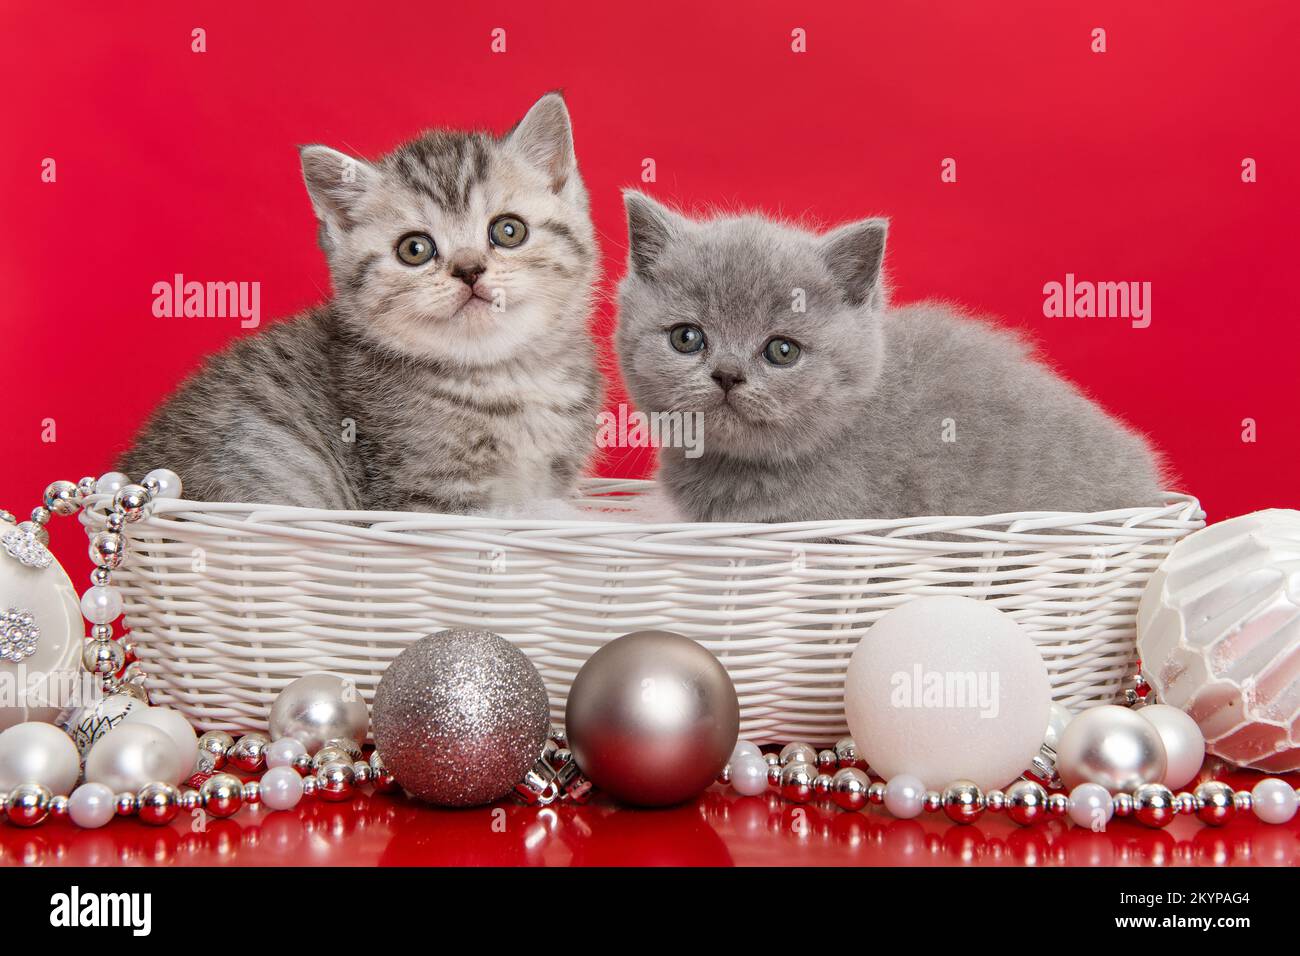 Zwei englische Kätzchen mit Kurzhaarschnitt in einem weißen Korb mit chirstmas-Ornamenten auf rotem Hintergrund Stockfoto